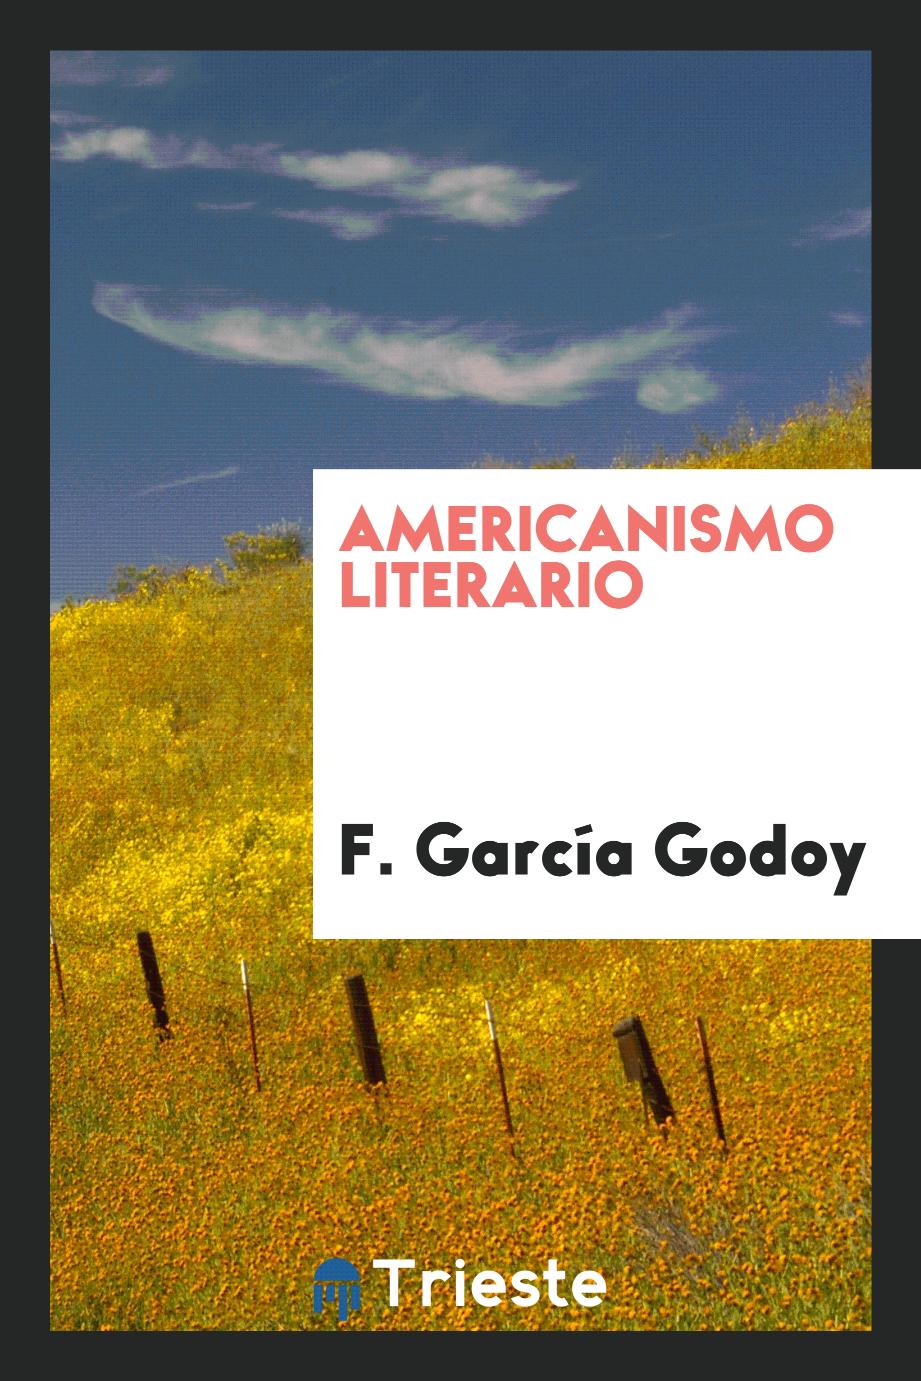 Americanismo literario